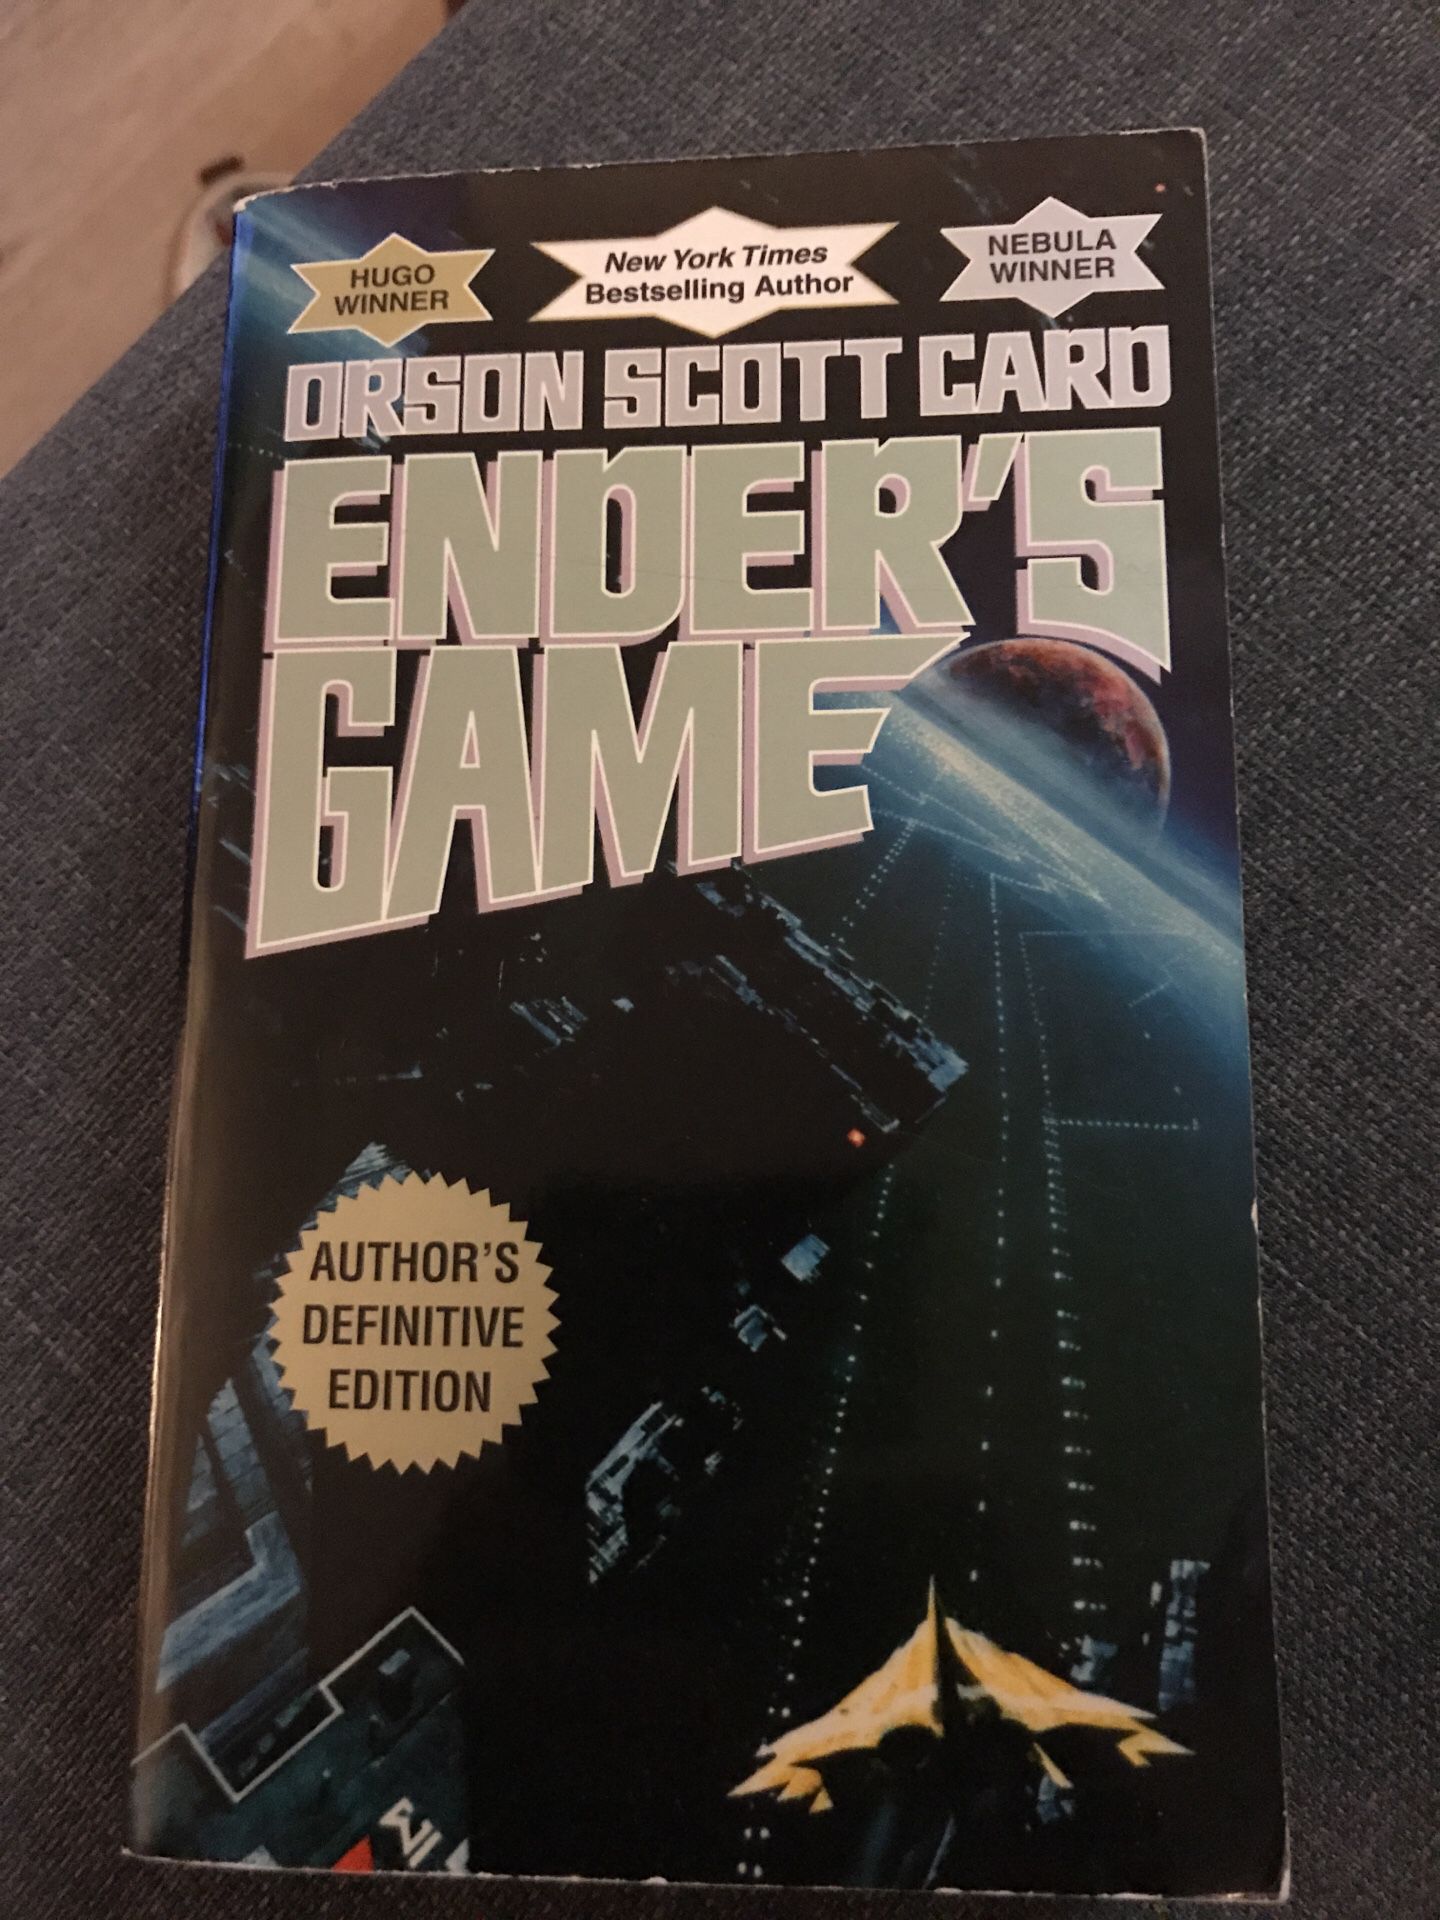 Ender’s Game Paperback Novel by Orson Scott Card